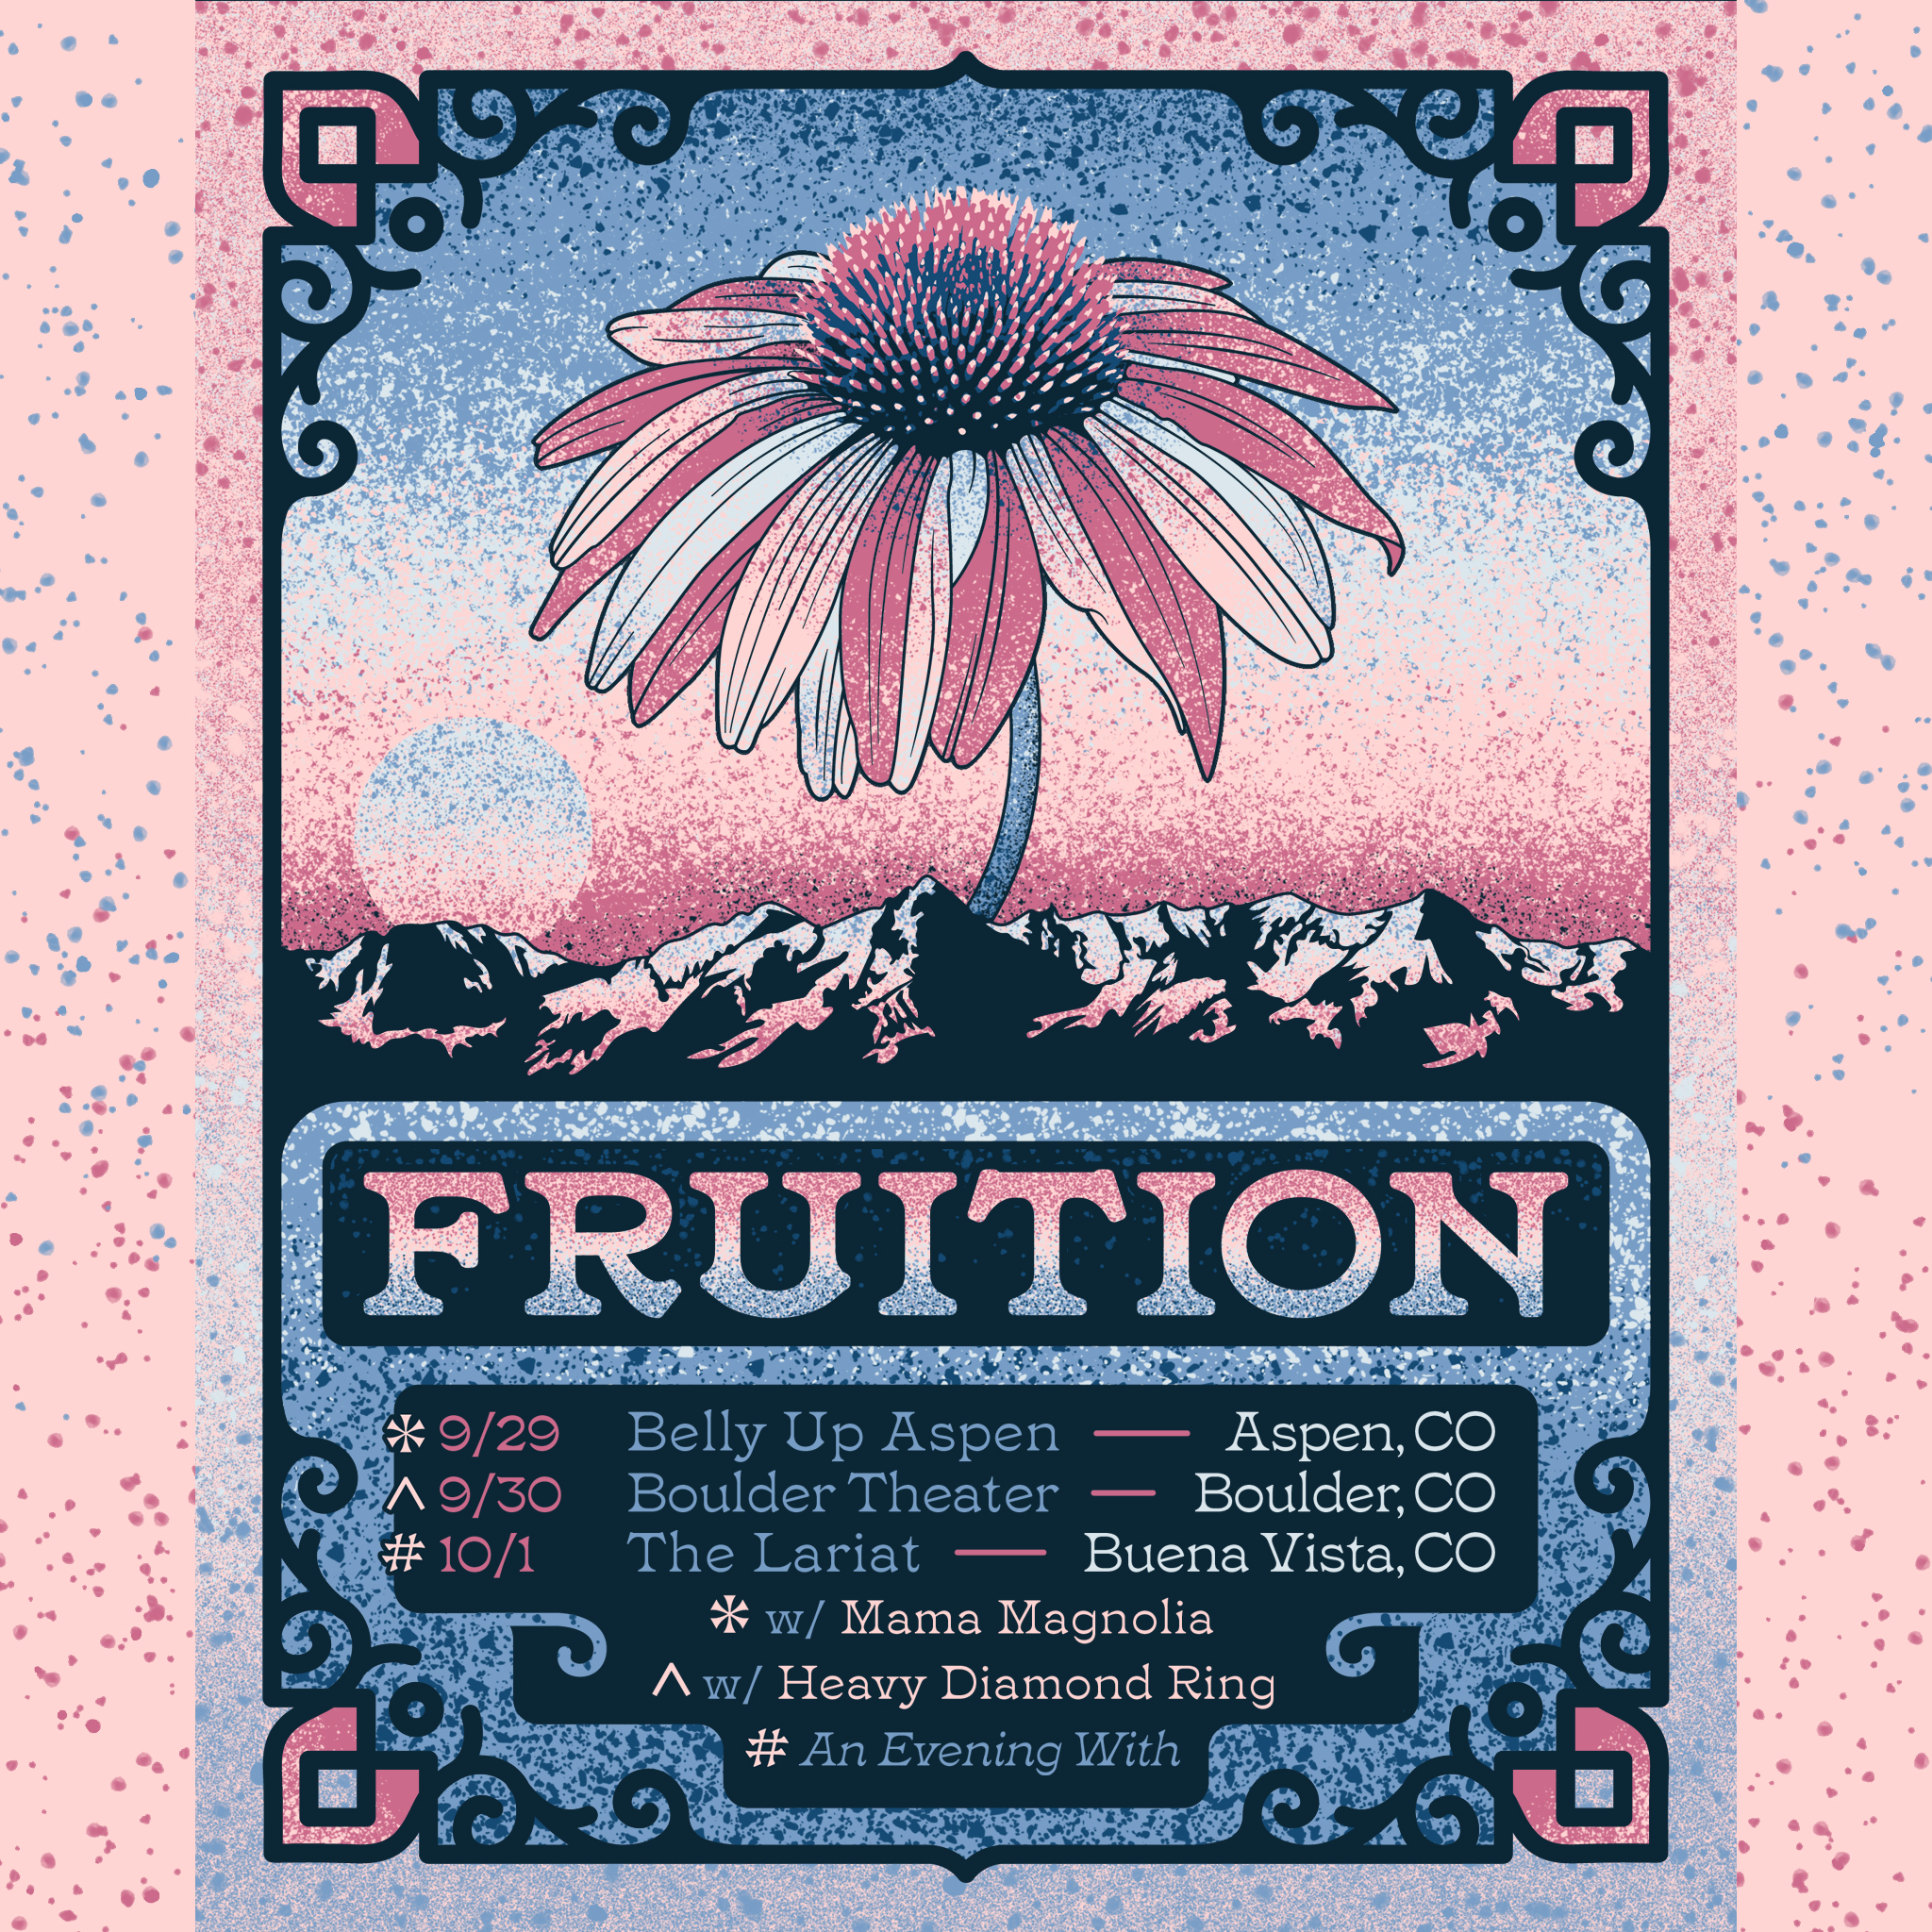 Fruition Announces Colorado Weekend